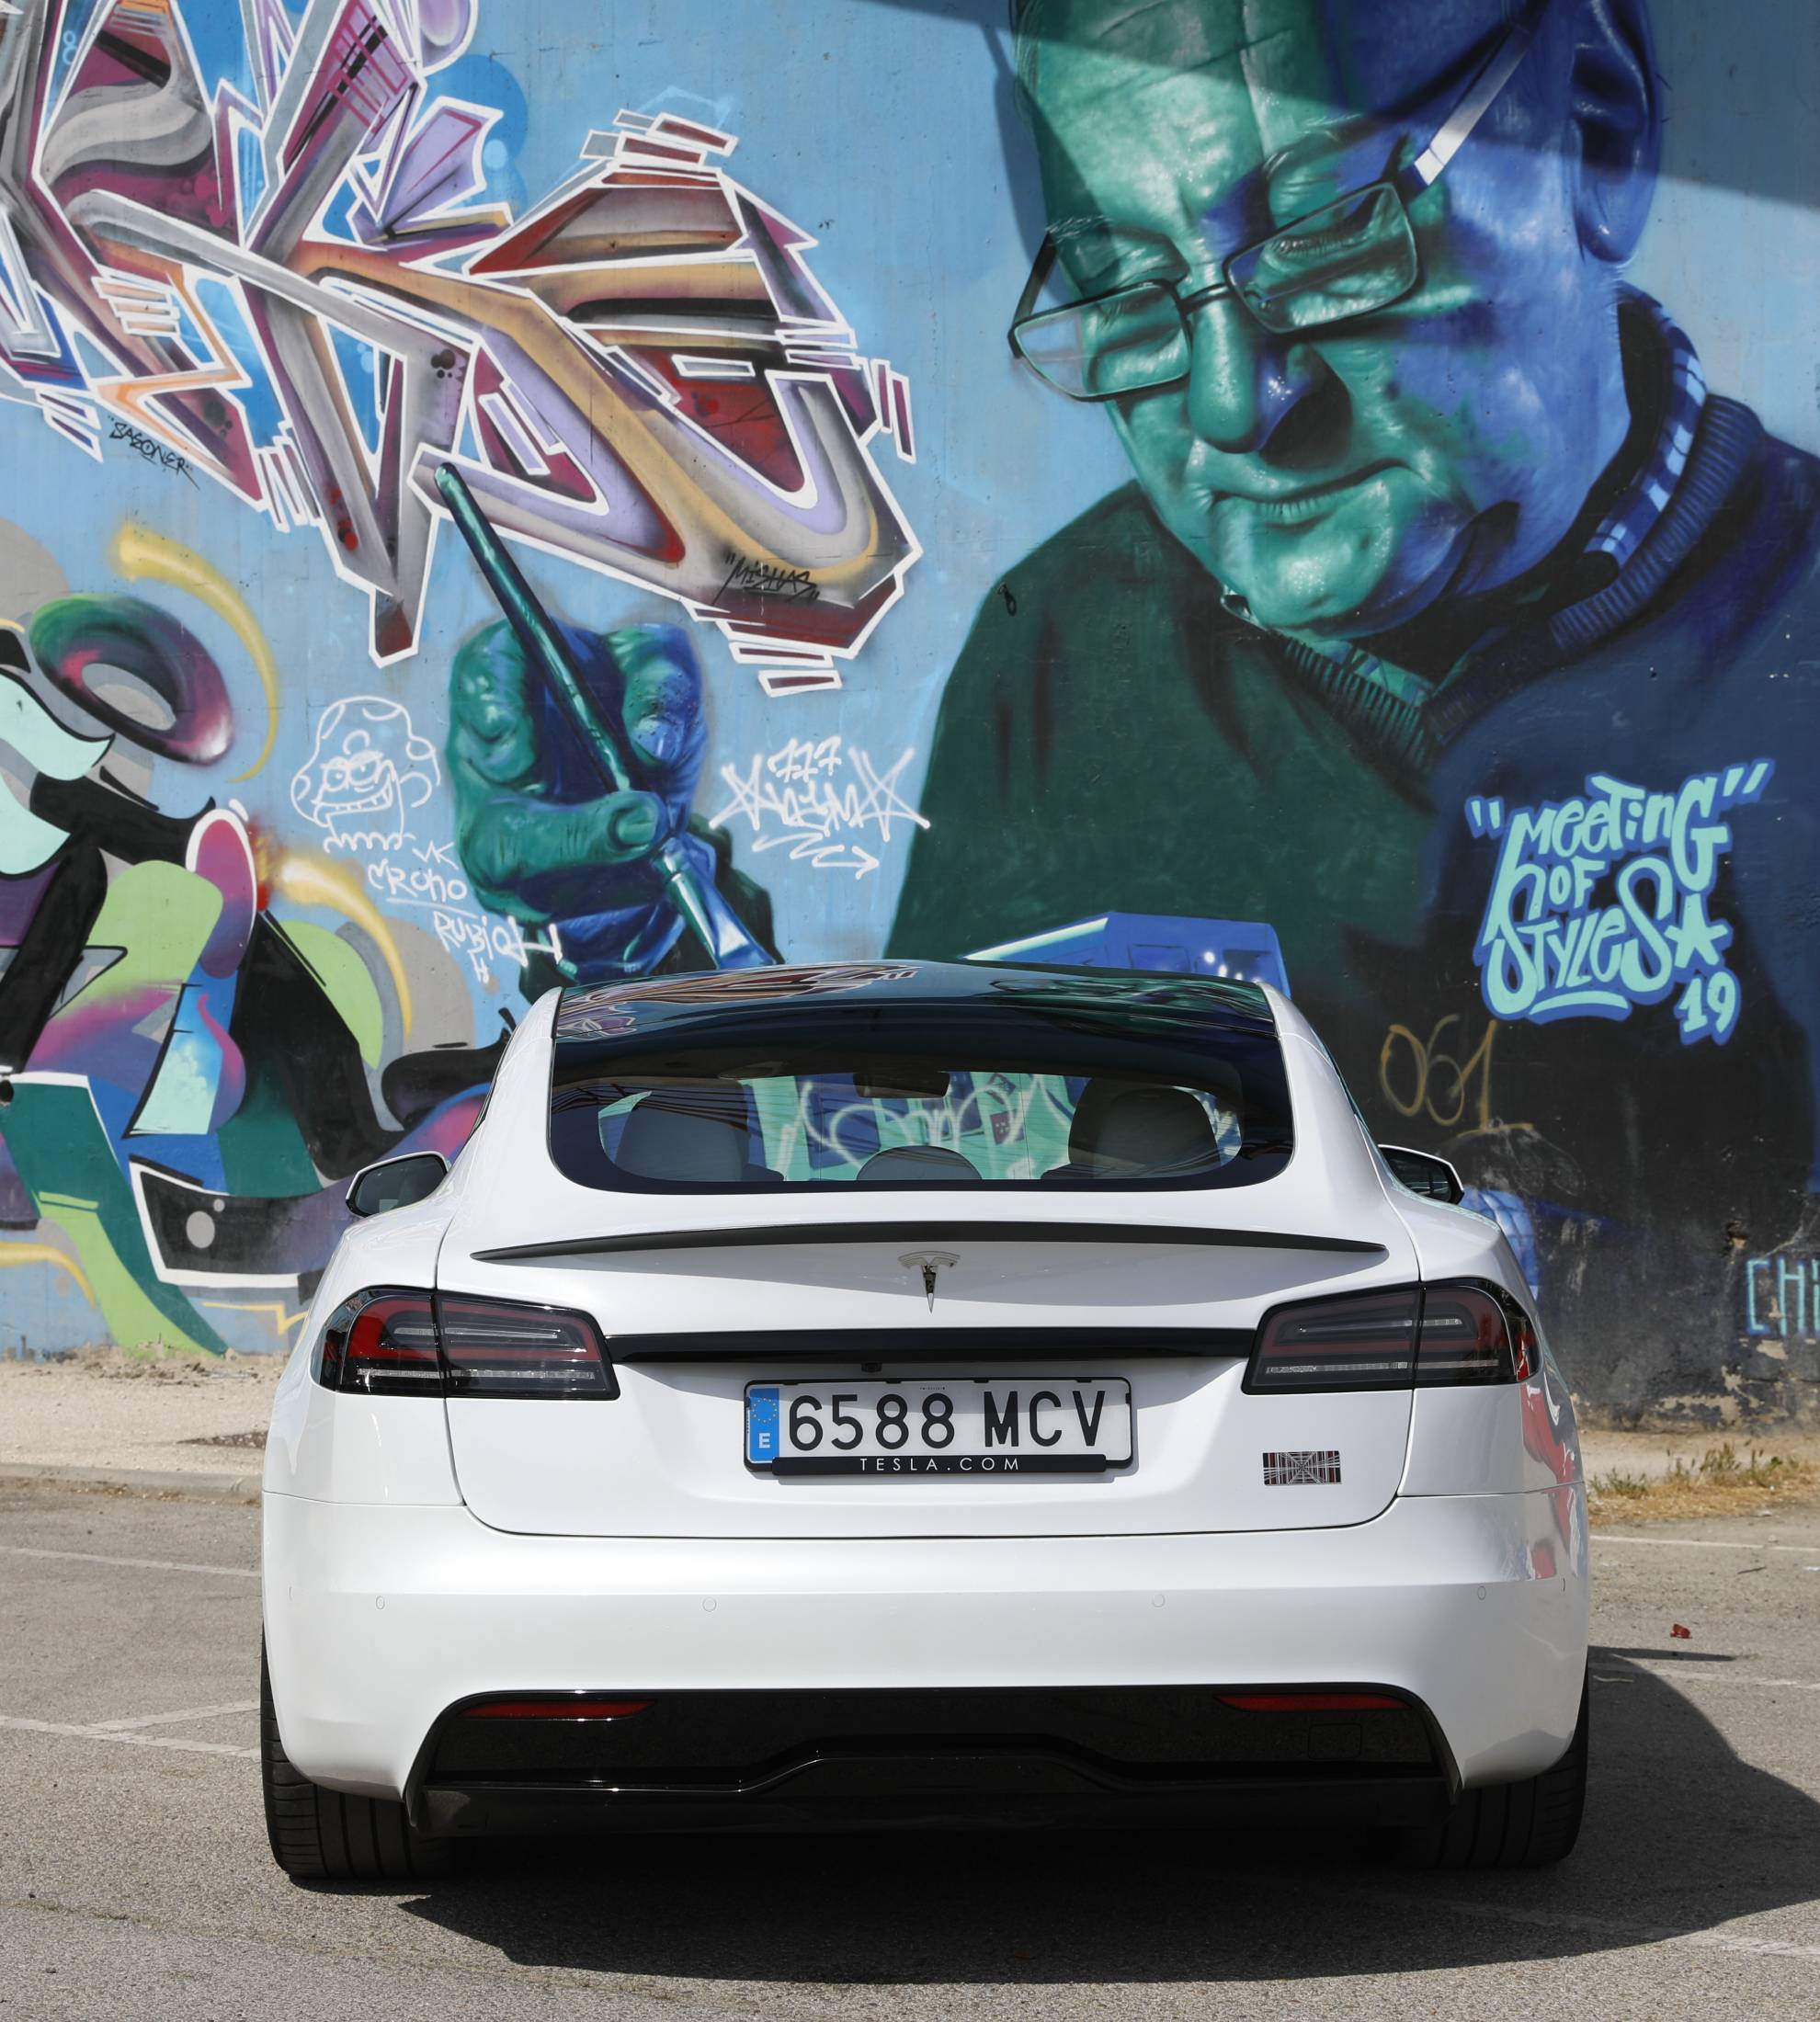 Apenas ese spoiler de carbono y el logo de los Plaid te muestra el verdadero carácter de este Model S.